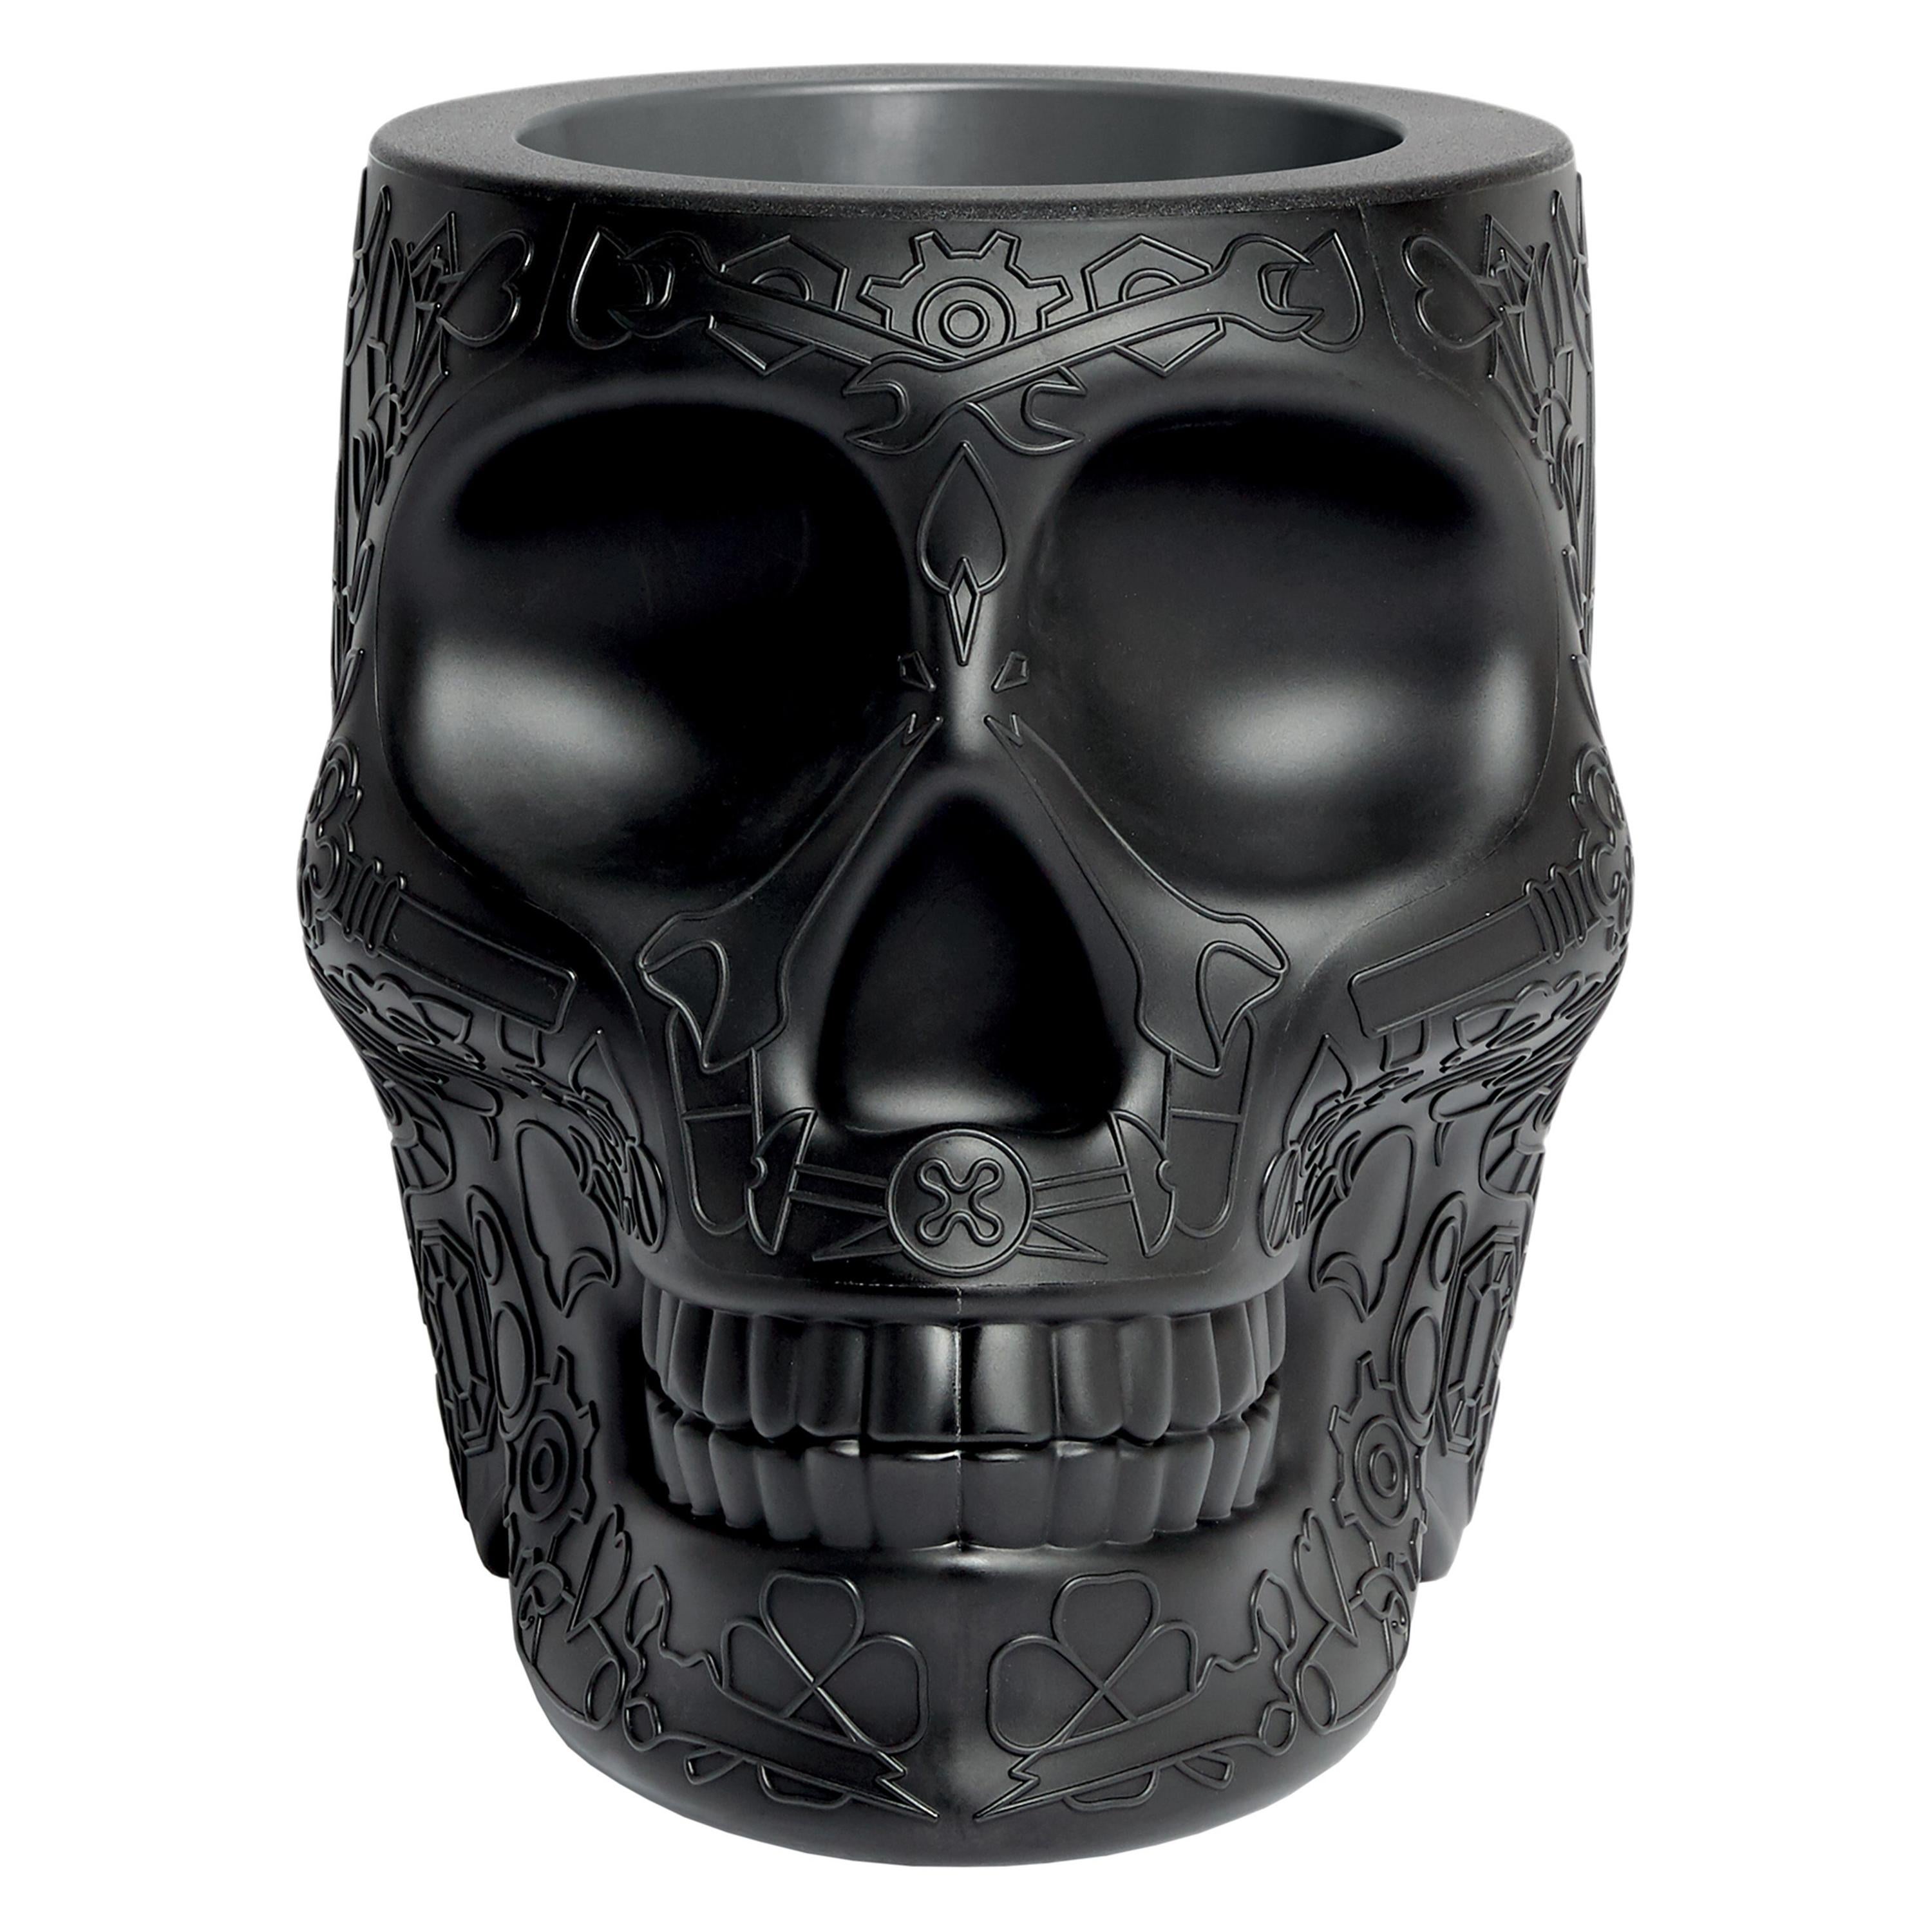 For Sale: Black Modern Skull Terracotta Plastic Planter or Champagne Cooler by Studio Job